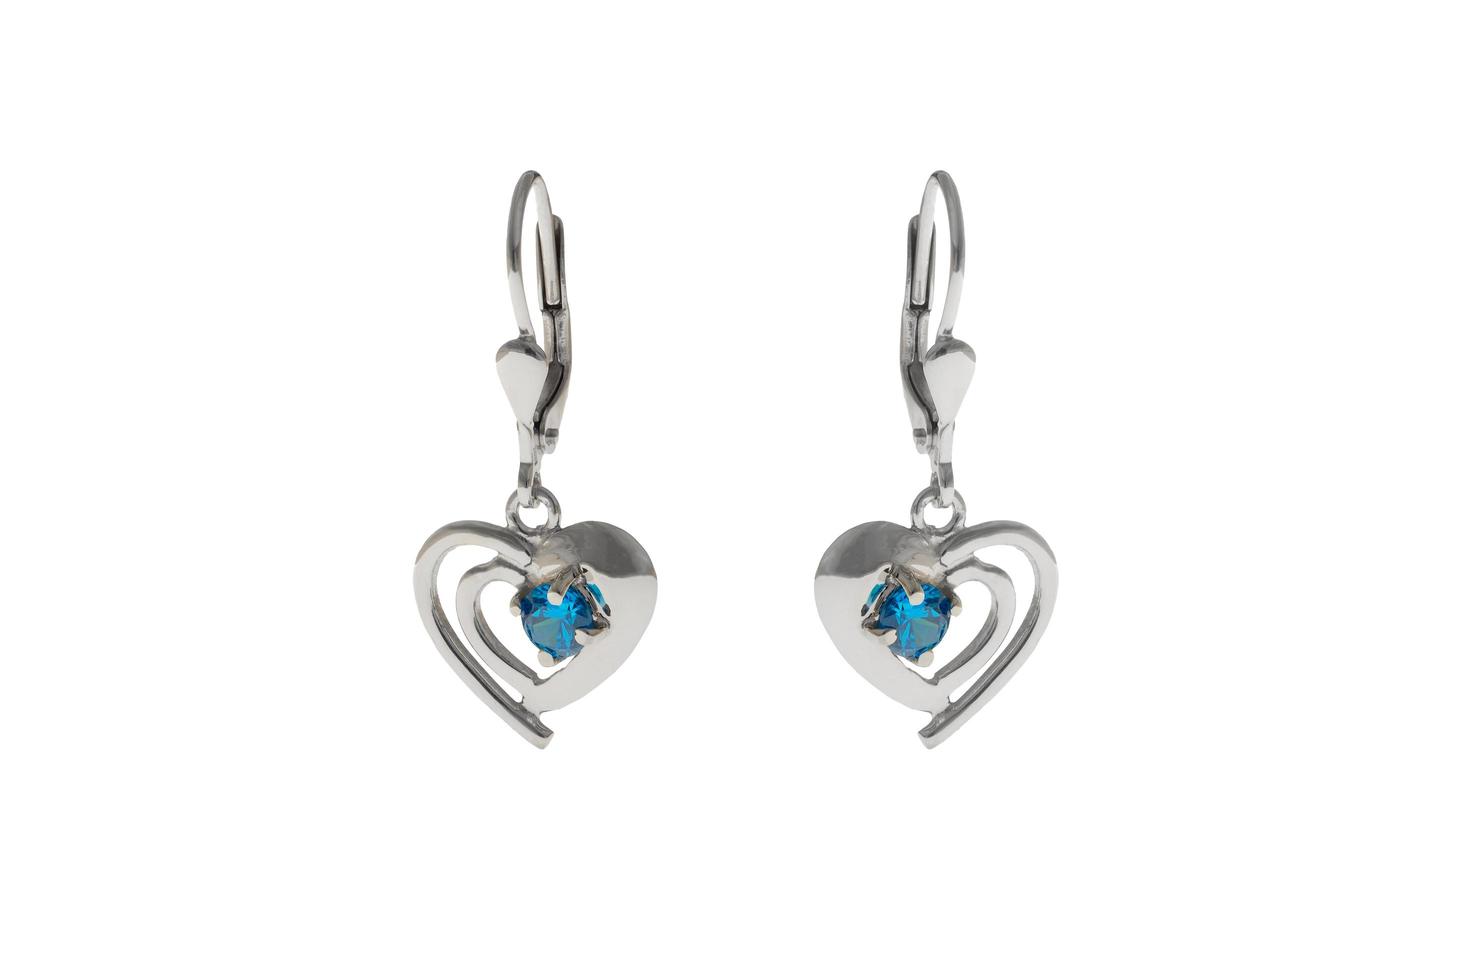 Silver earrings in the shape of heart photo